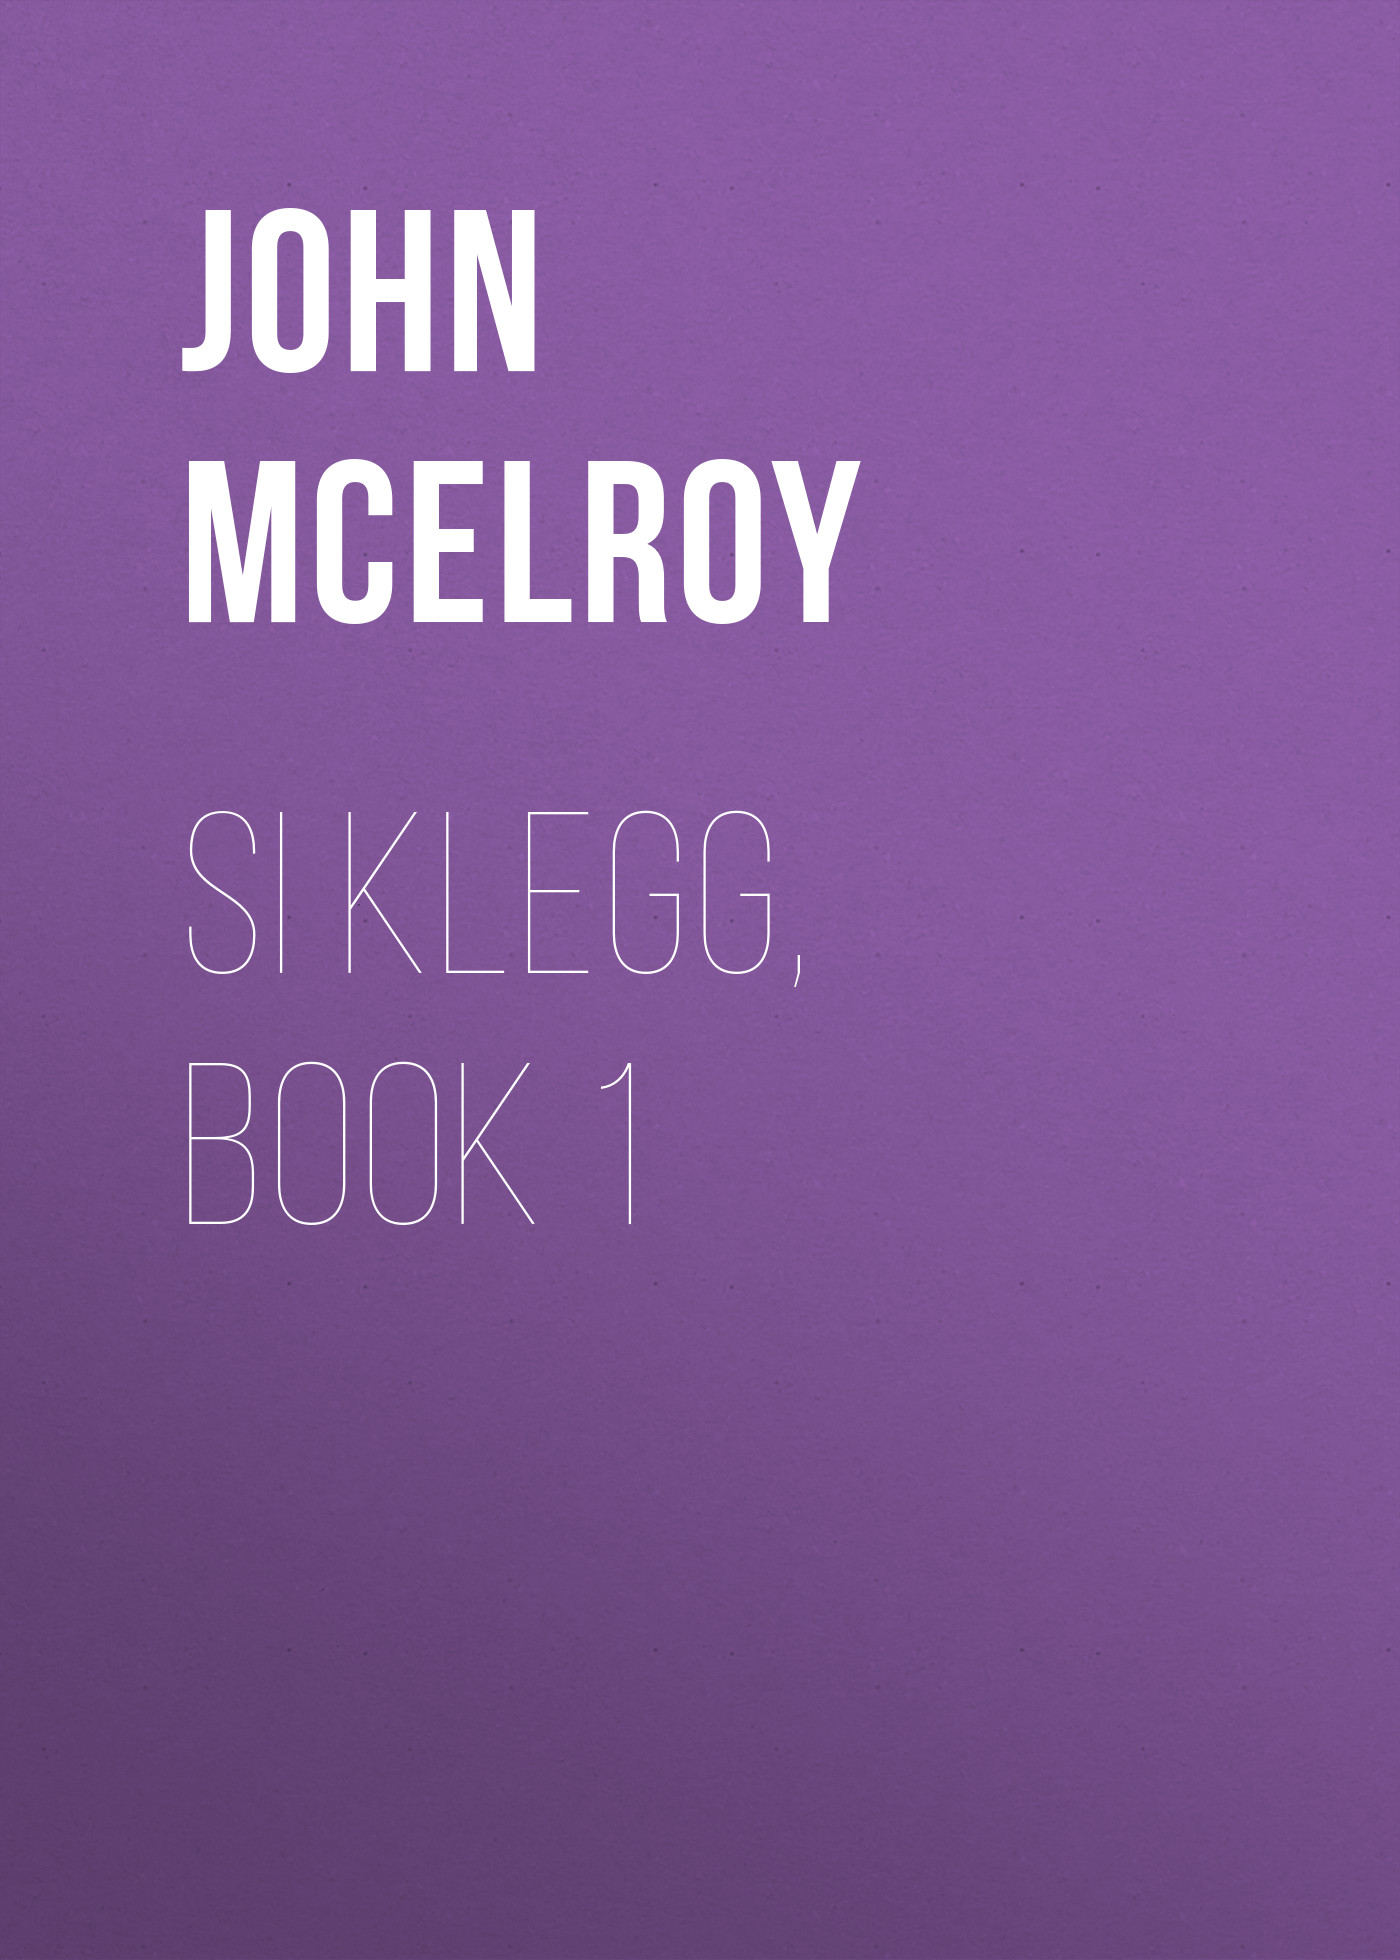 Книга Si Klegg, Book 1 из серии , созданная John McElroy, может относится к жанру Зарубежная классика, История, Зарубежная образовательная литература, Зарубежная старинная литература. Стоимость электронной книги Si Klegg, Book 1 с идентификатором 36324228 составляет 0 руб.